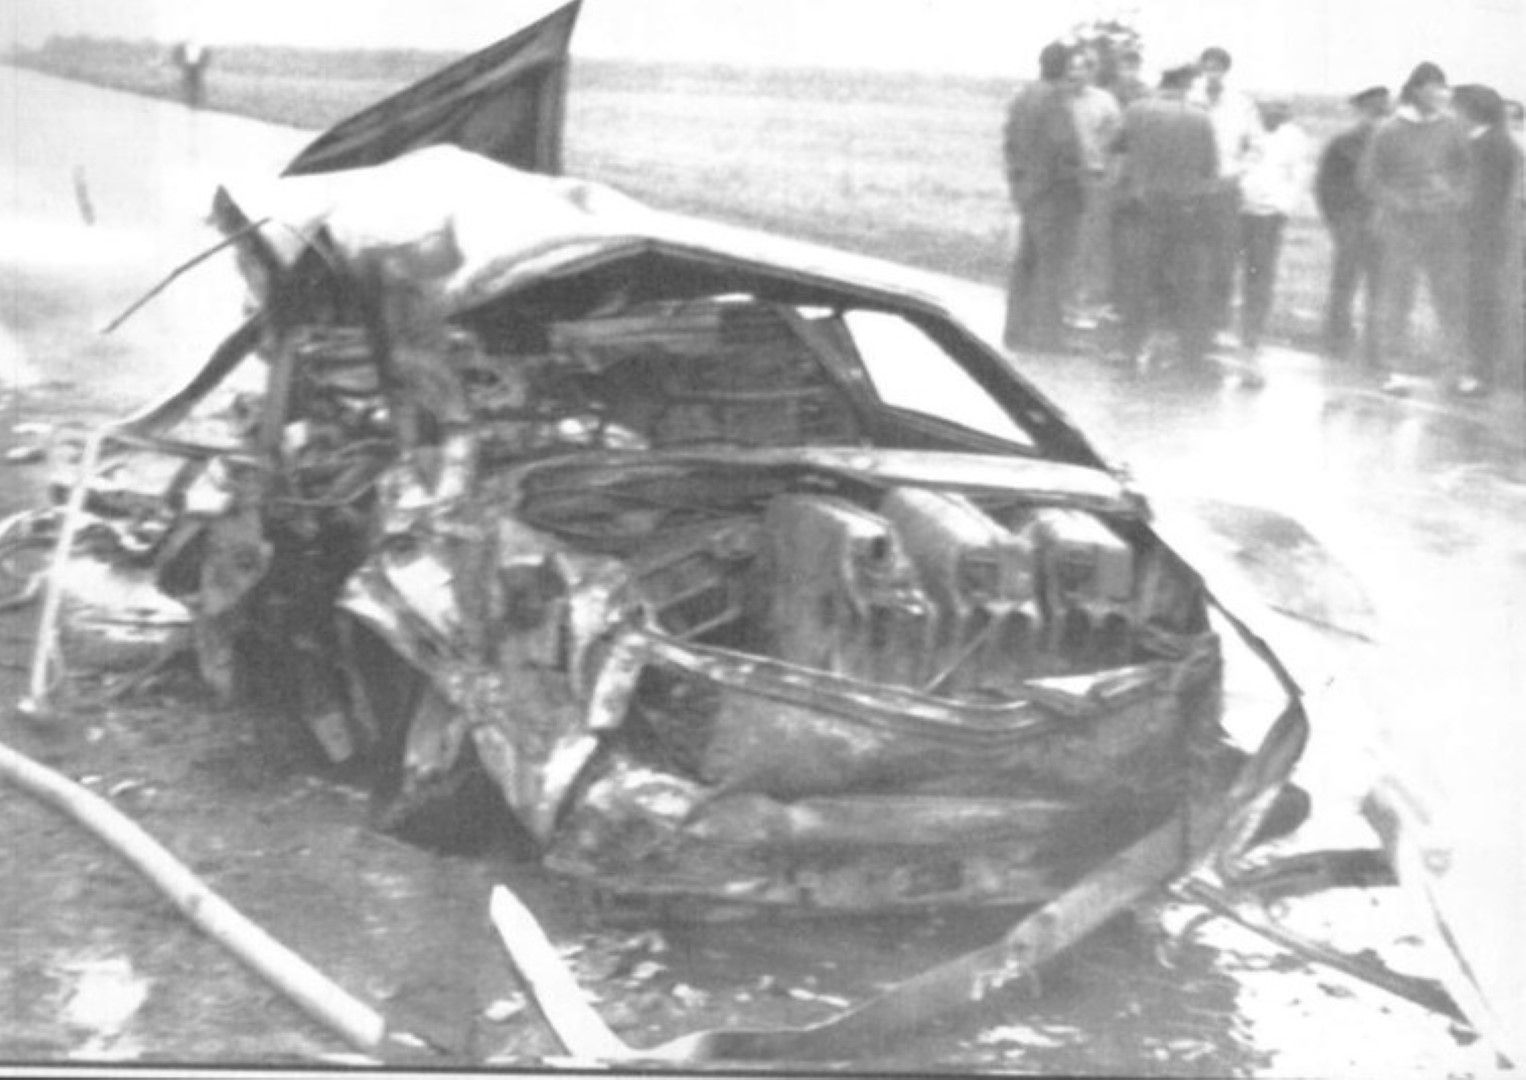 Ширея си отиде на 3 септември 1989 г. край полския град   Бабск в катастрофа, след като бе гледал мач на "Гурник"   (Забже) в ролята си на скаут на "Ювентус". Автомобилът му се   удря в камион, навлязъл в насрещната лента, а в багажника   има туба с гориво, която експлодира. В същото време в Италия   върви неделното предаване "Доменика Спортива", където се   следят мачовете от първенството и програмата е прекъсната   заради ужасната новина. Страната потъва в скръб заради   уважавания от всички Гаетано.